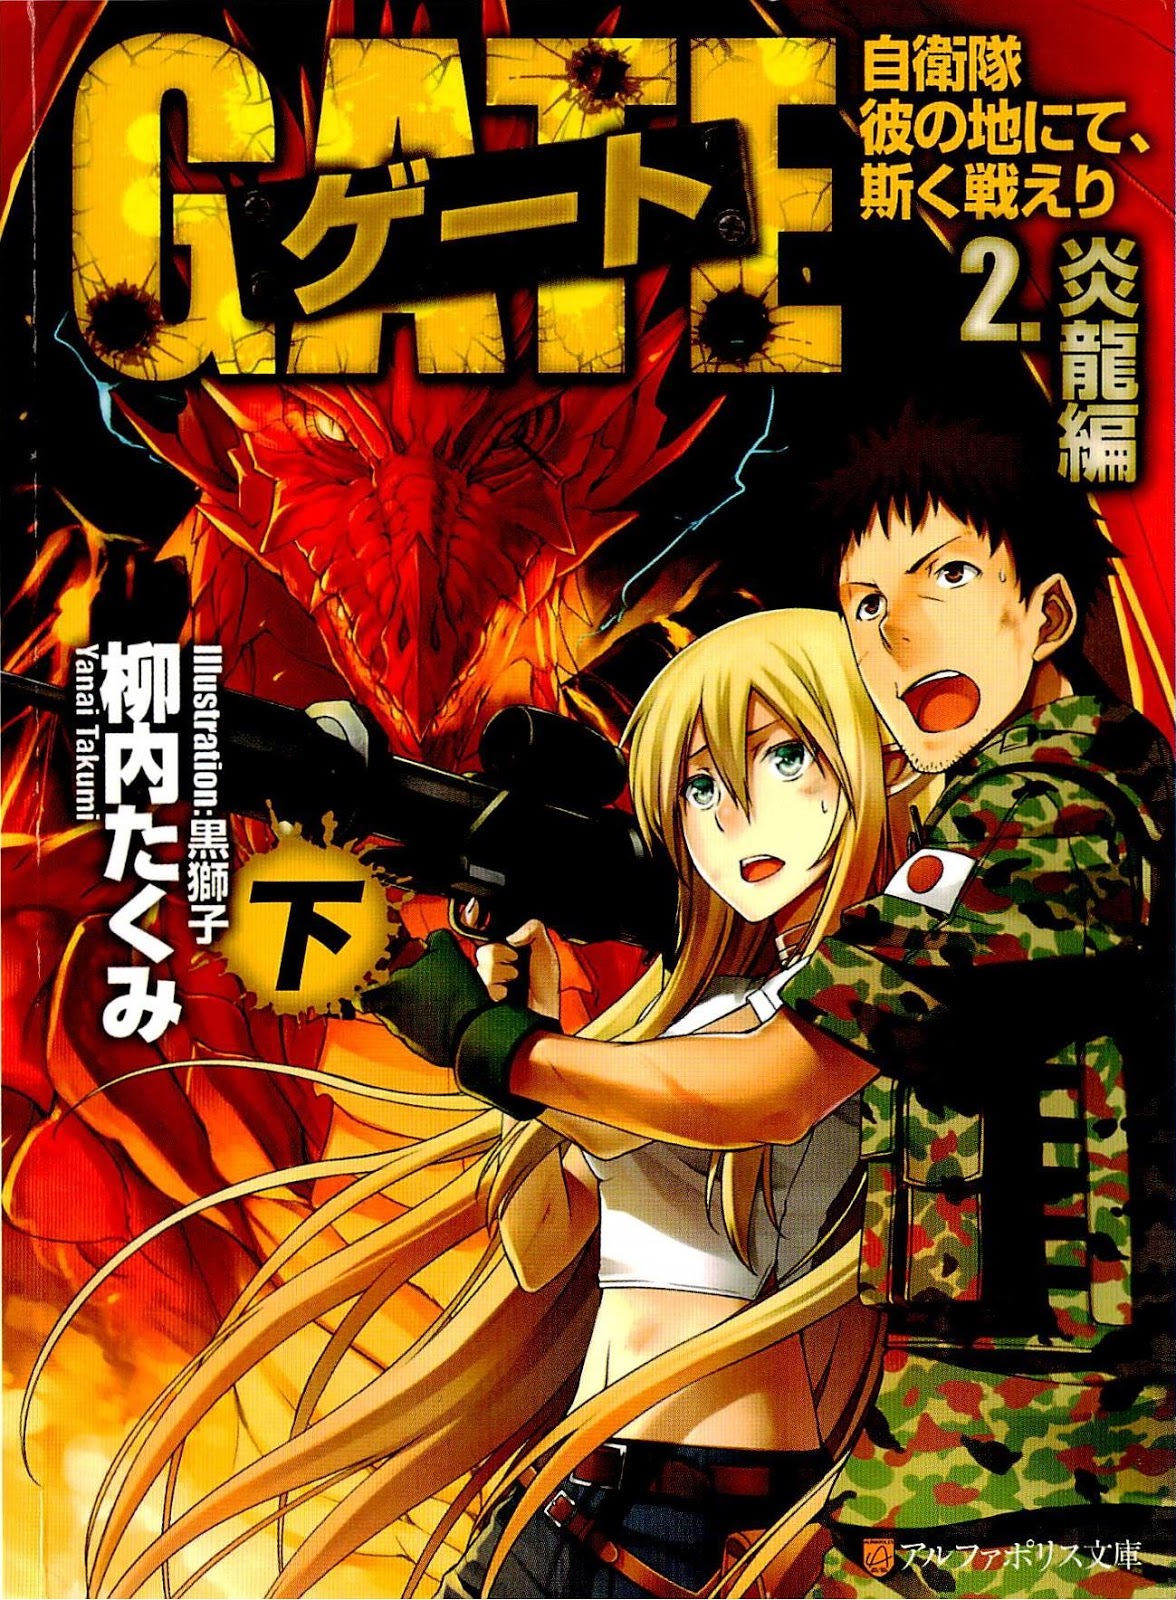 JP] Gate JSDF Novel vs Light Novel vs Manga vs Anime Art : r